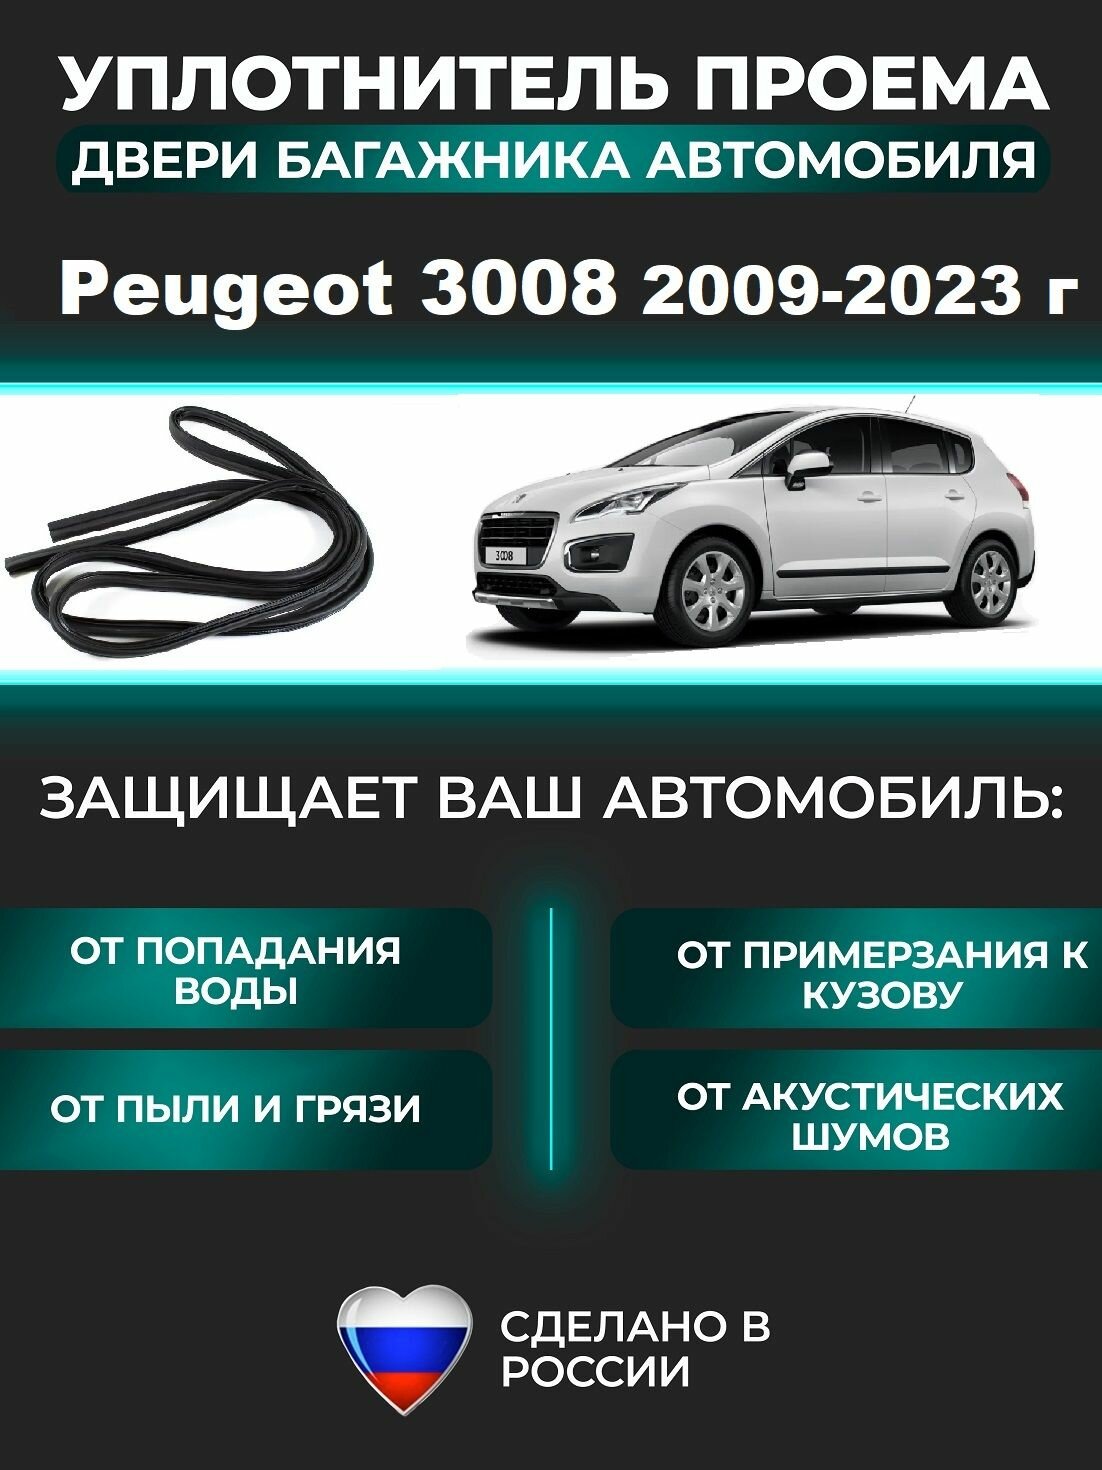 Уплотнитель багажника Peugeot 3008 2009-2023 г / Пежо 3008